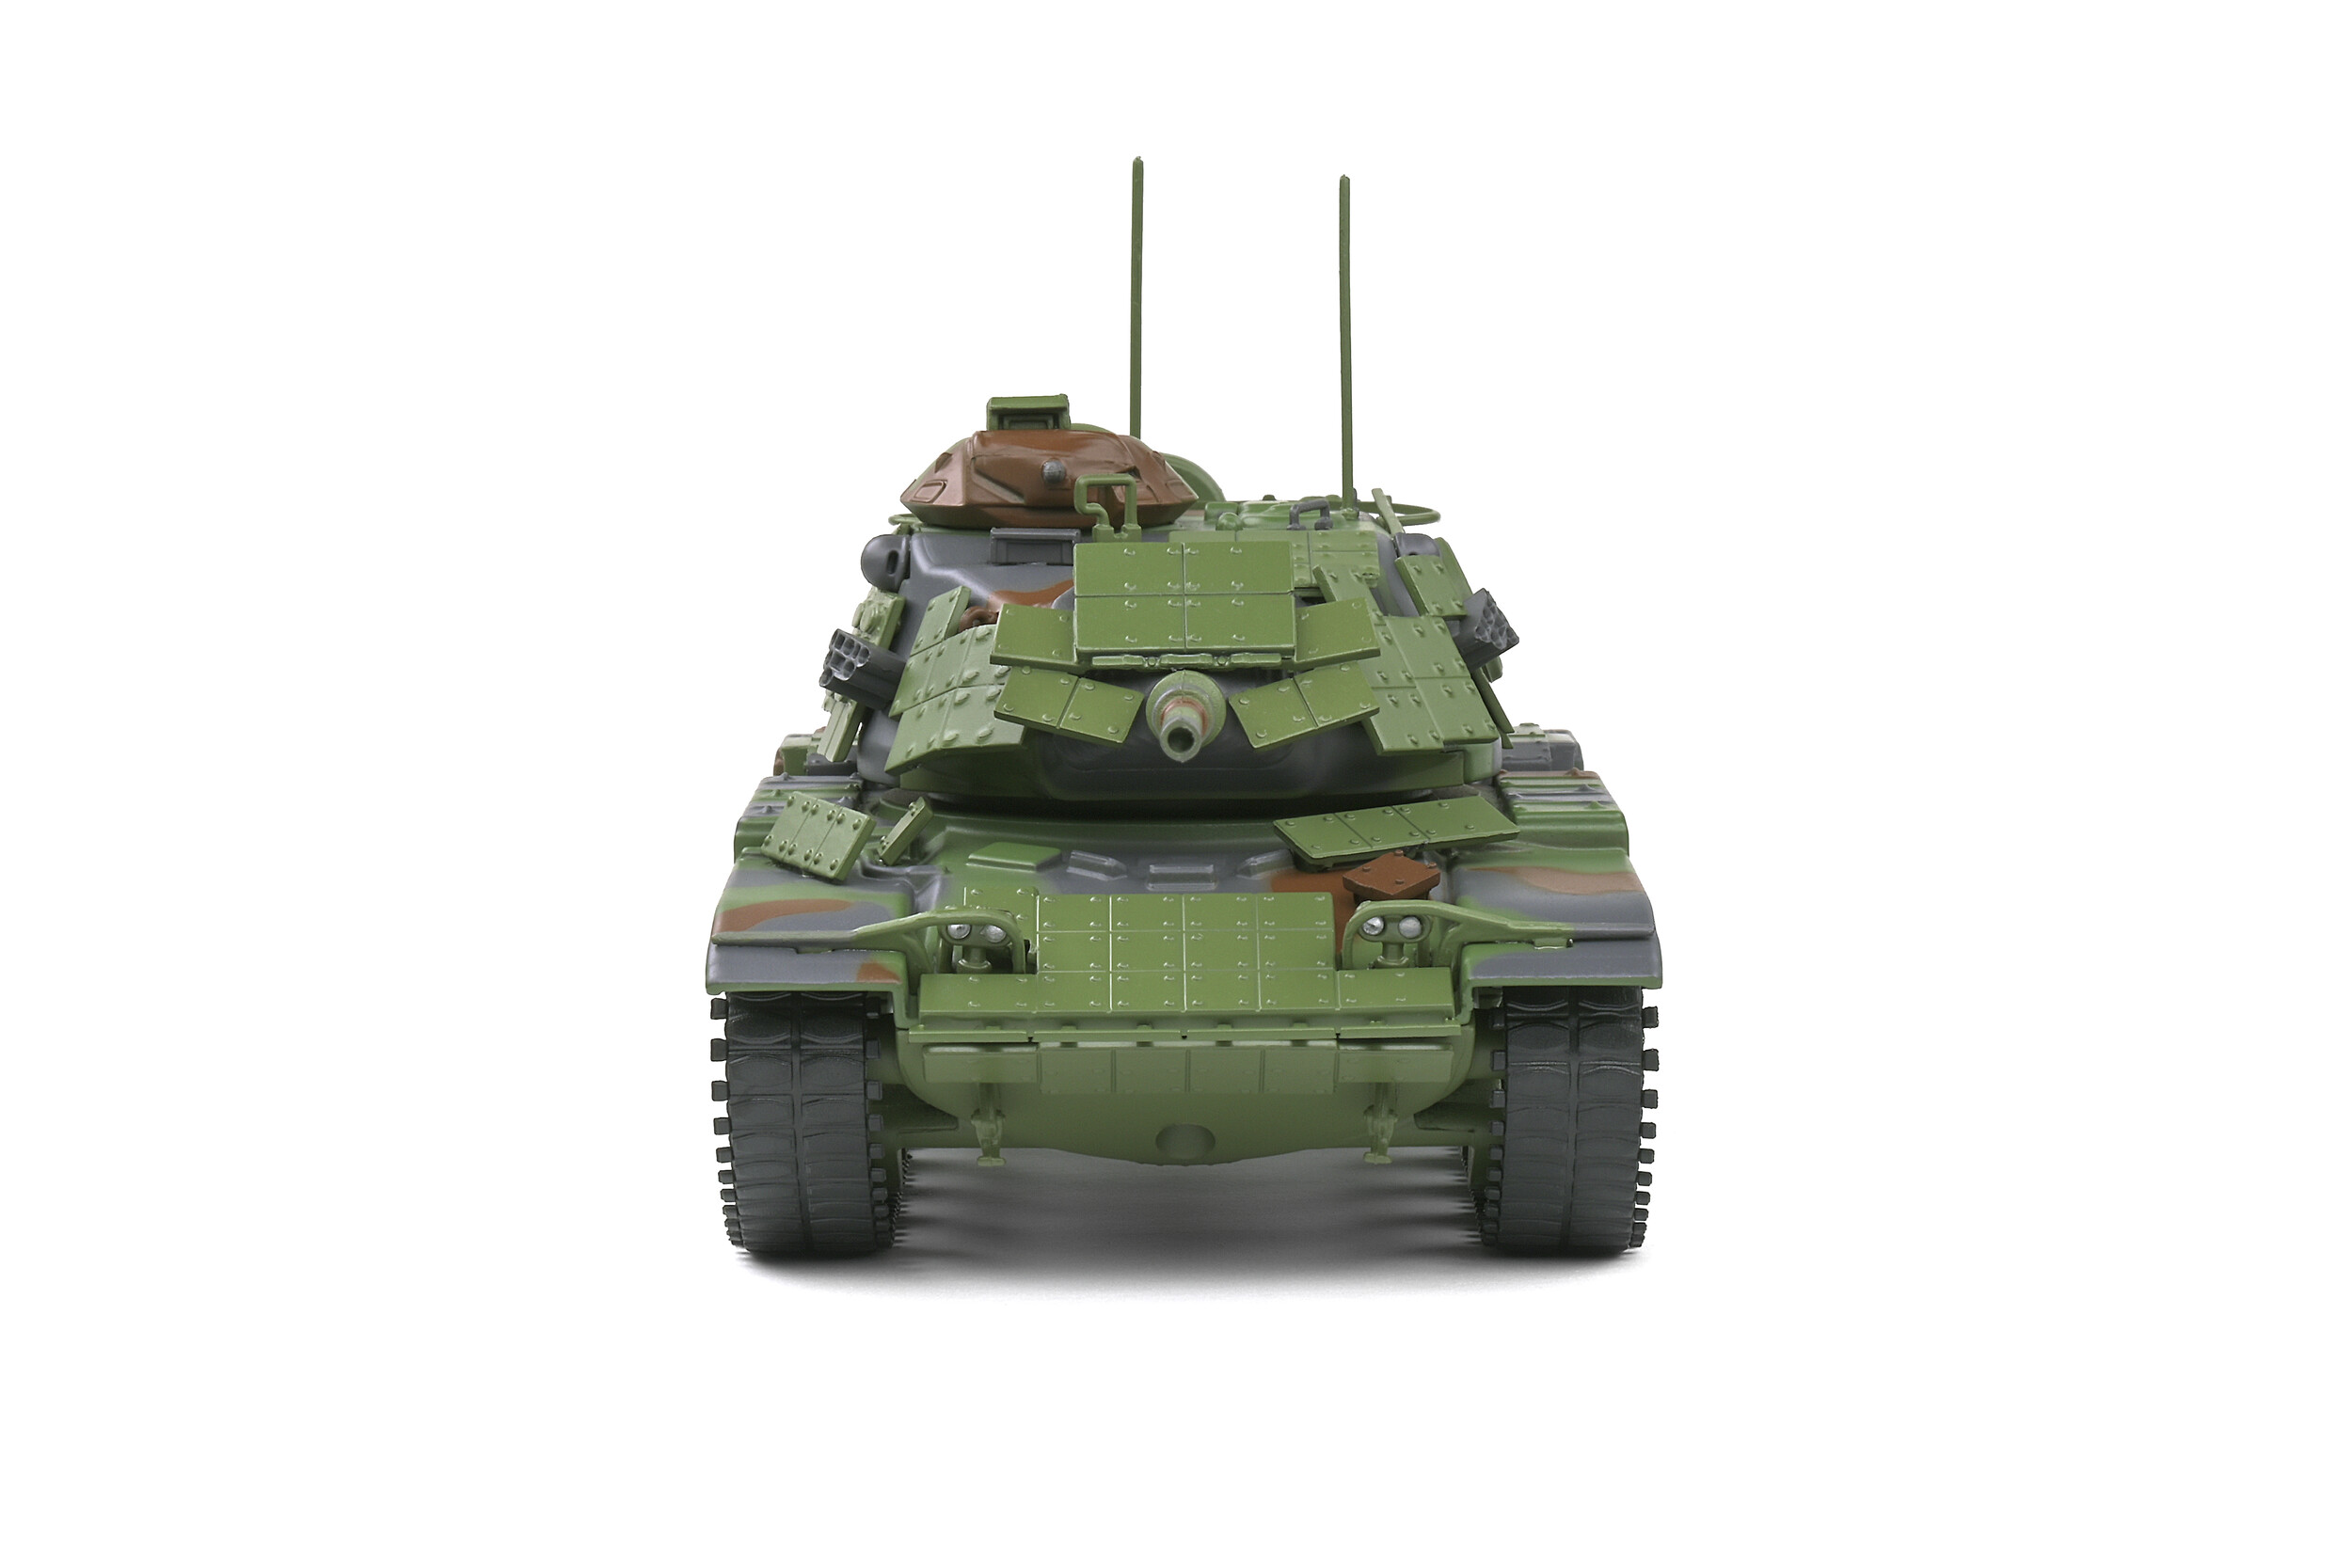 Chrysler Defense M60 A1 Tank - Green Camo - 1959 - Solido